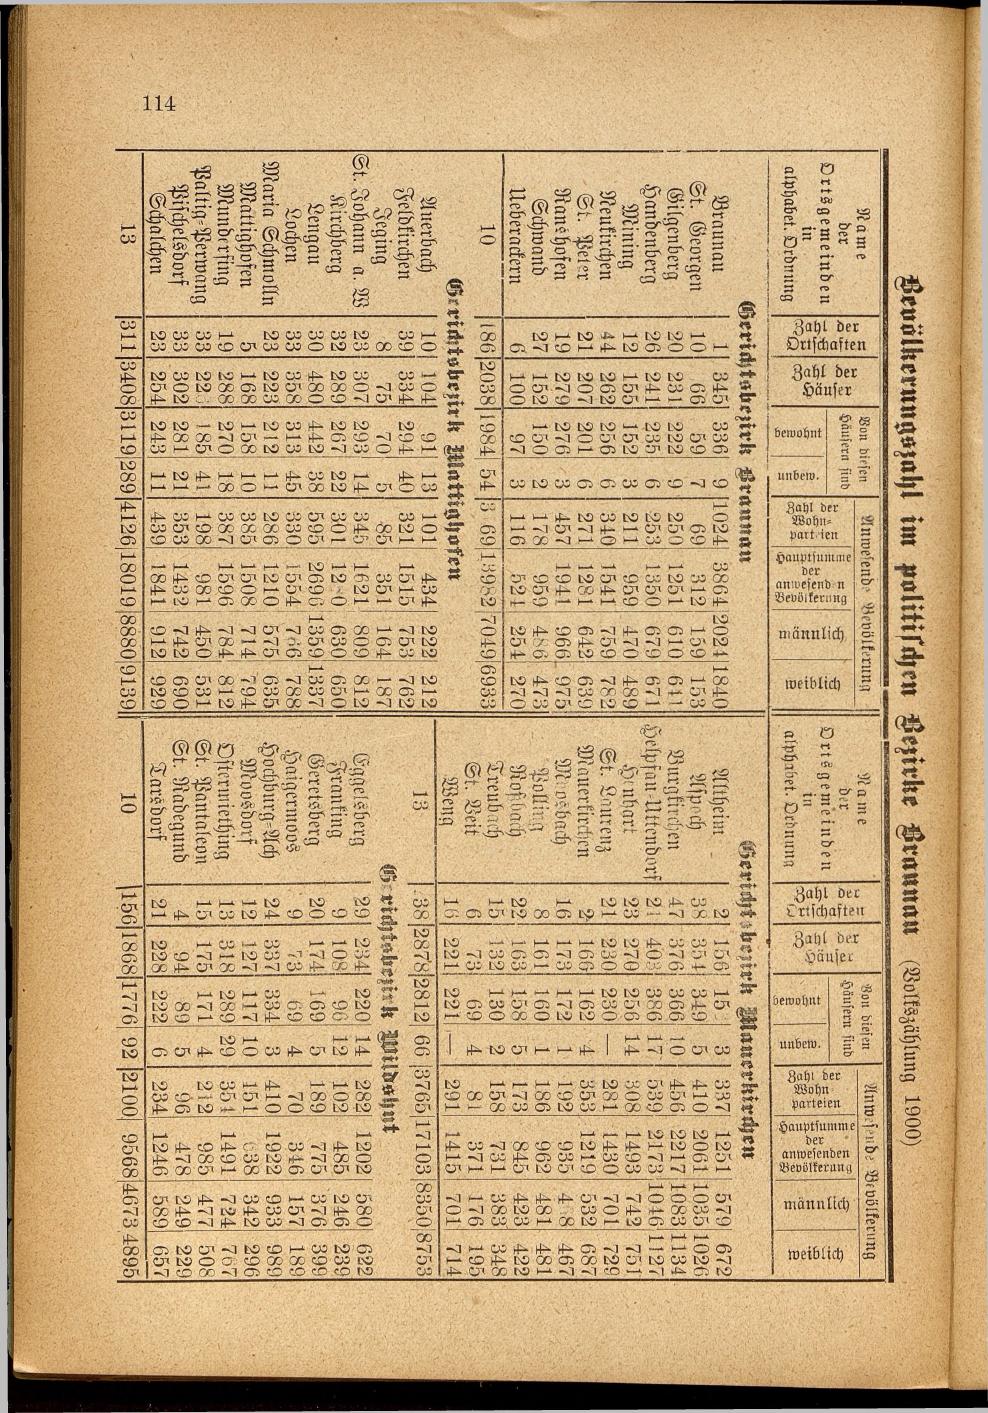 Illustrierter Braunauer-Kalender für das Jahr 1904 - Seite 118